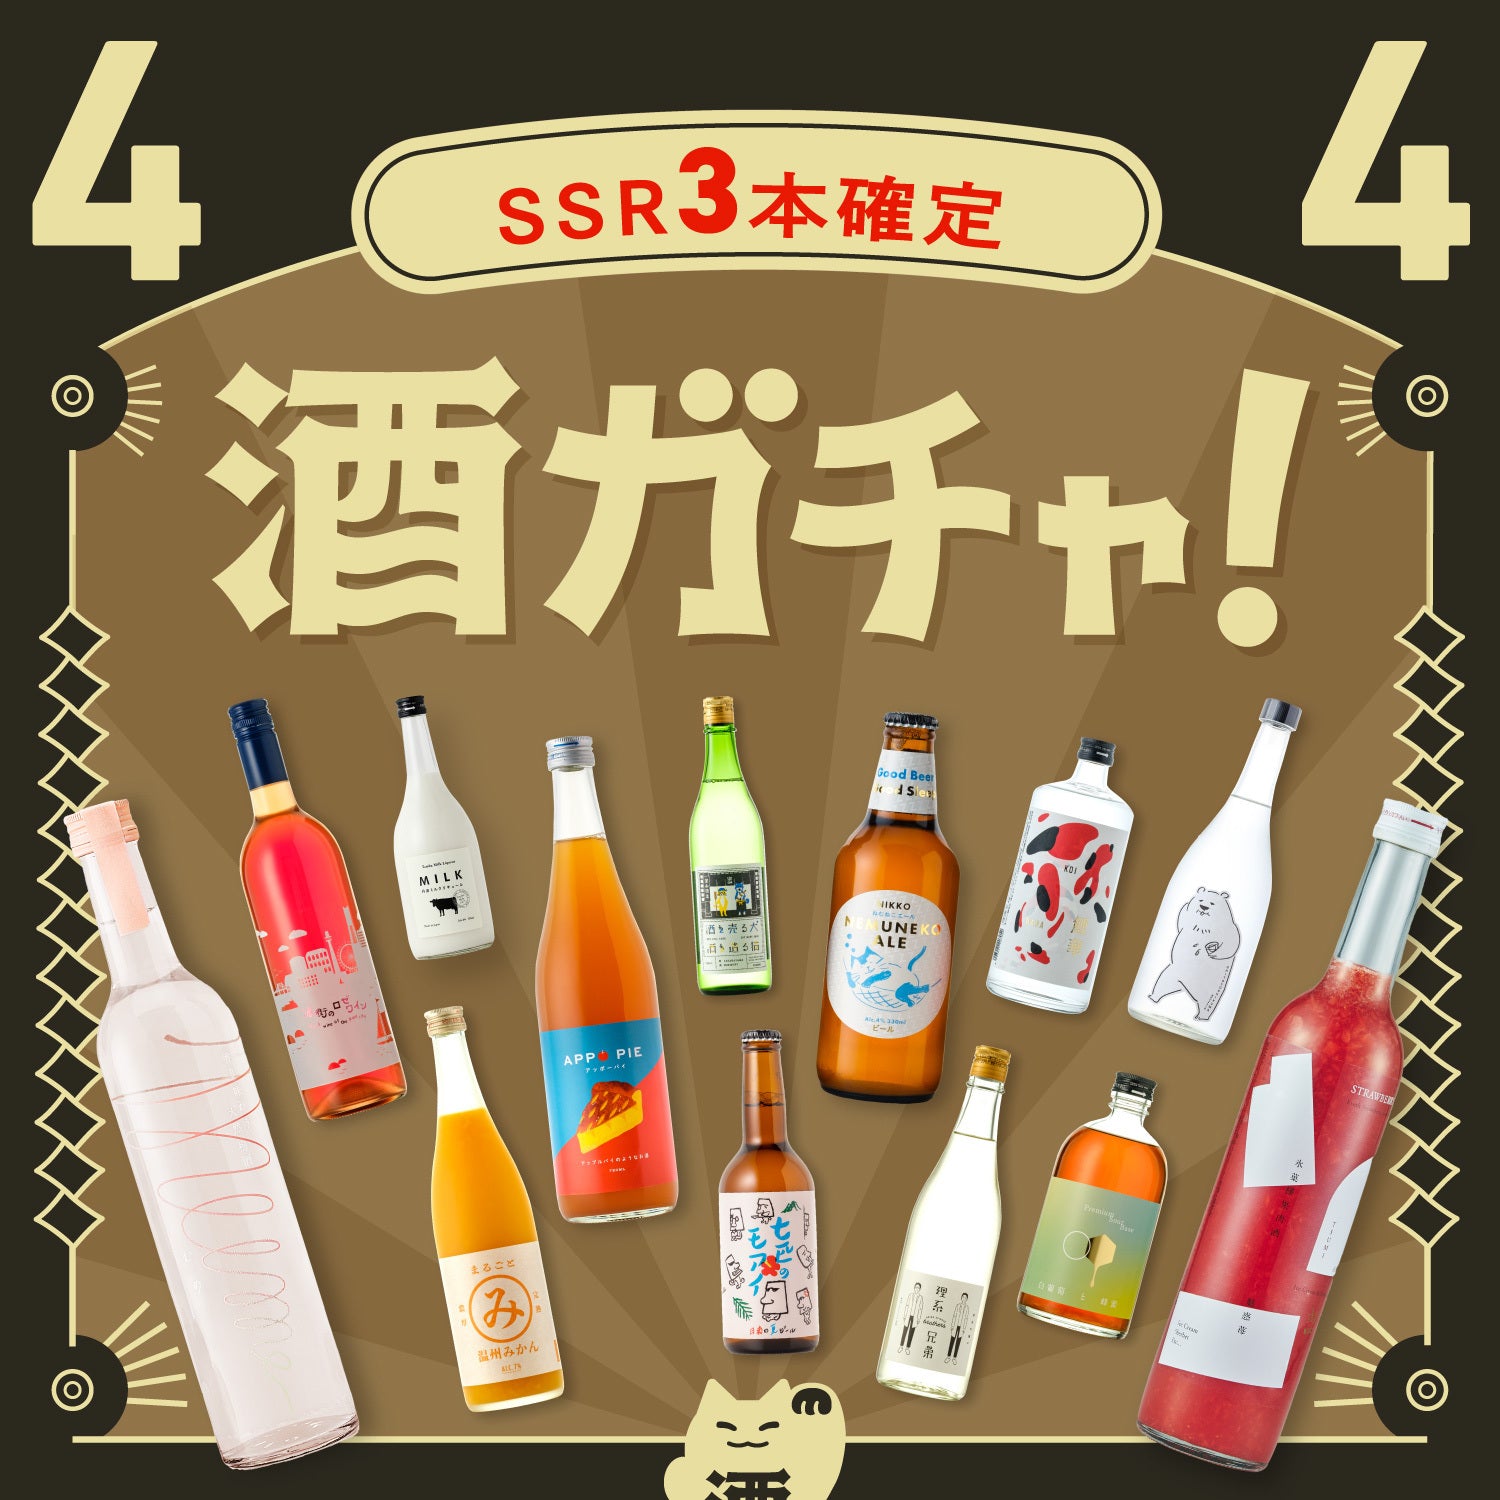 【解読者限定】4連酒ガチャ SSR3本以上&総額15,000円以上確定プラン